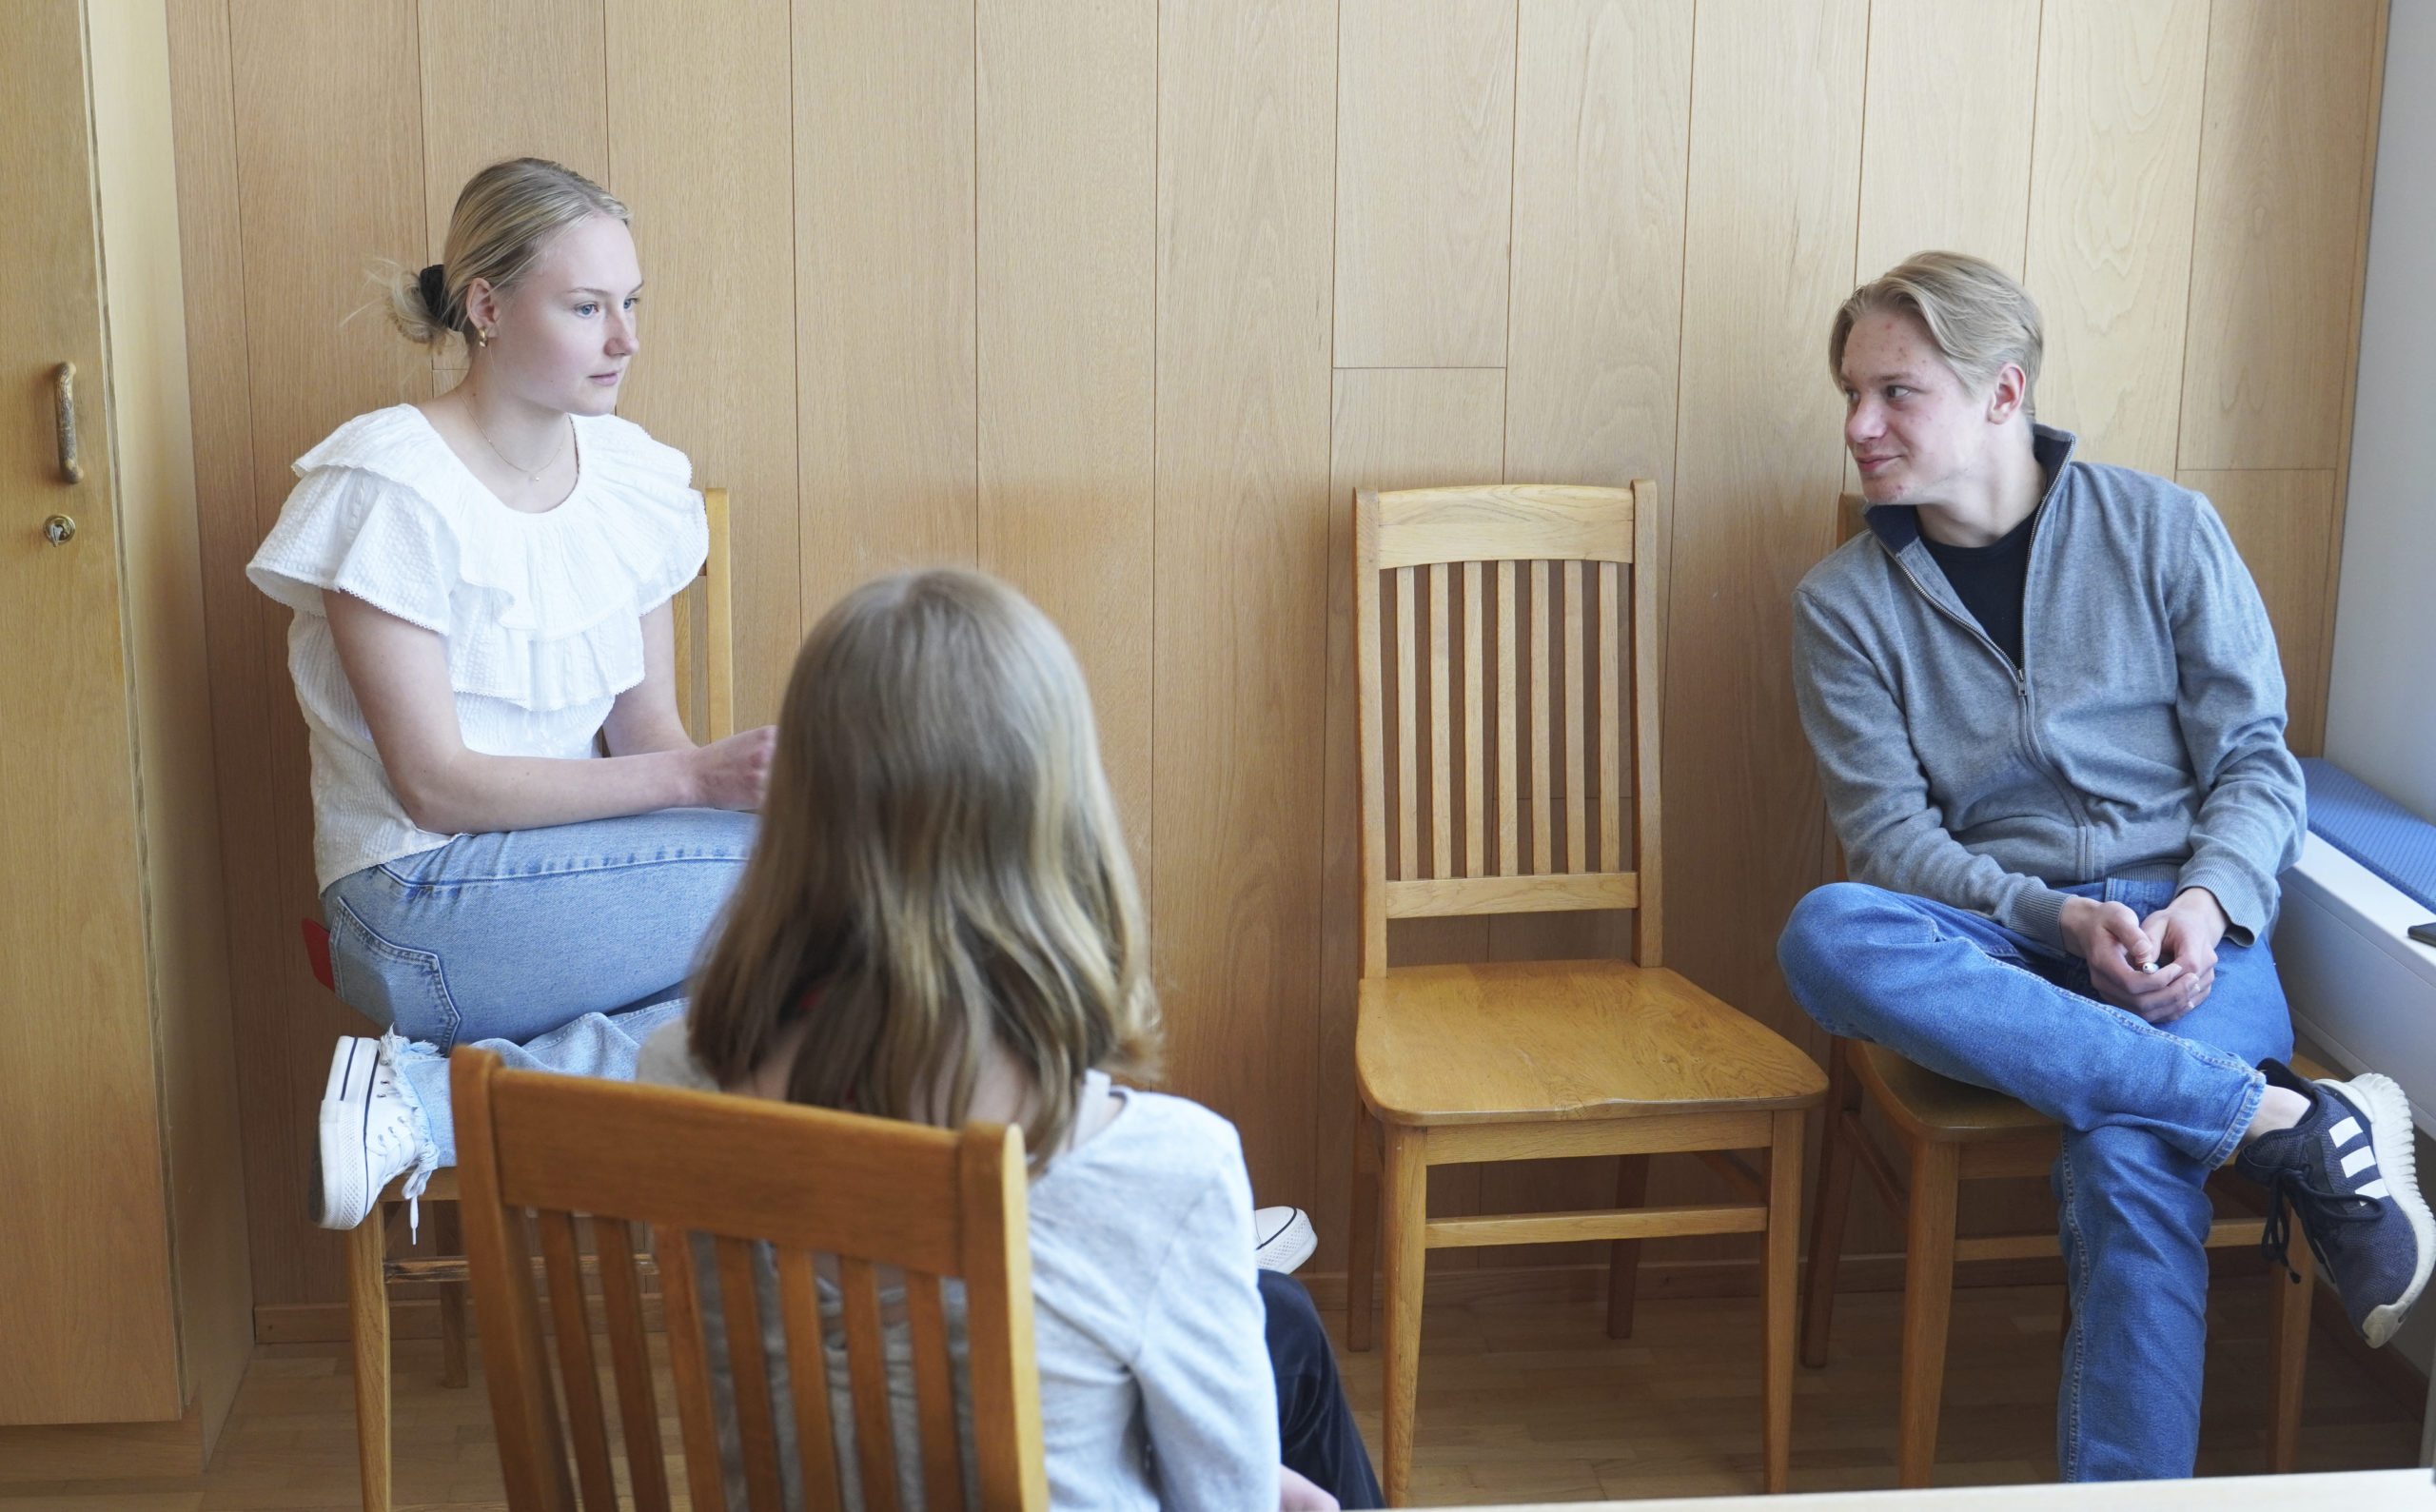 Kolme nuorta keskustelee ryhmässä.